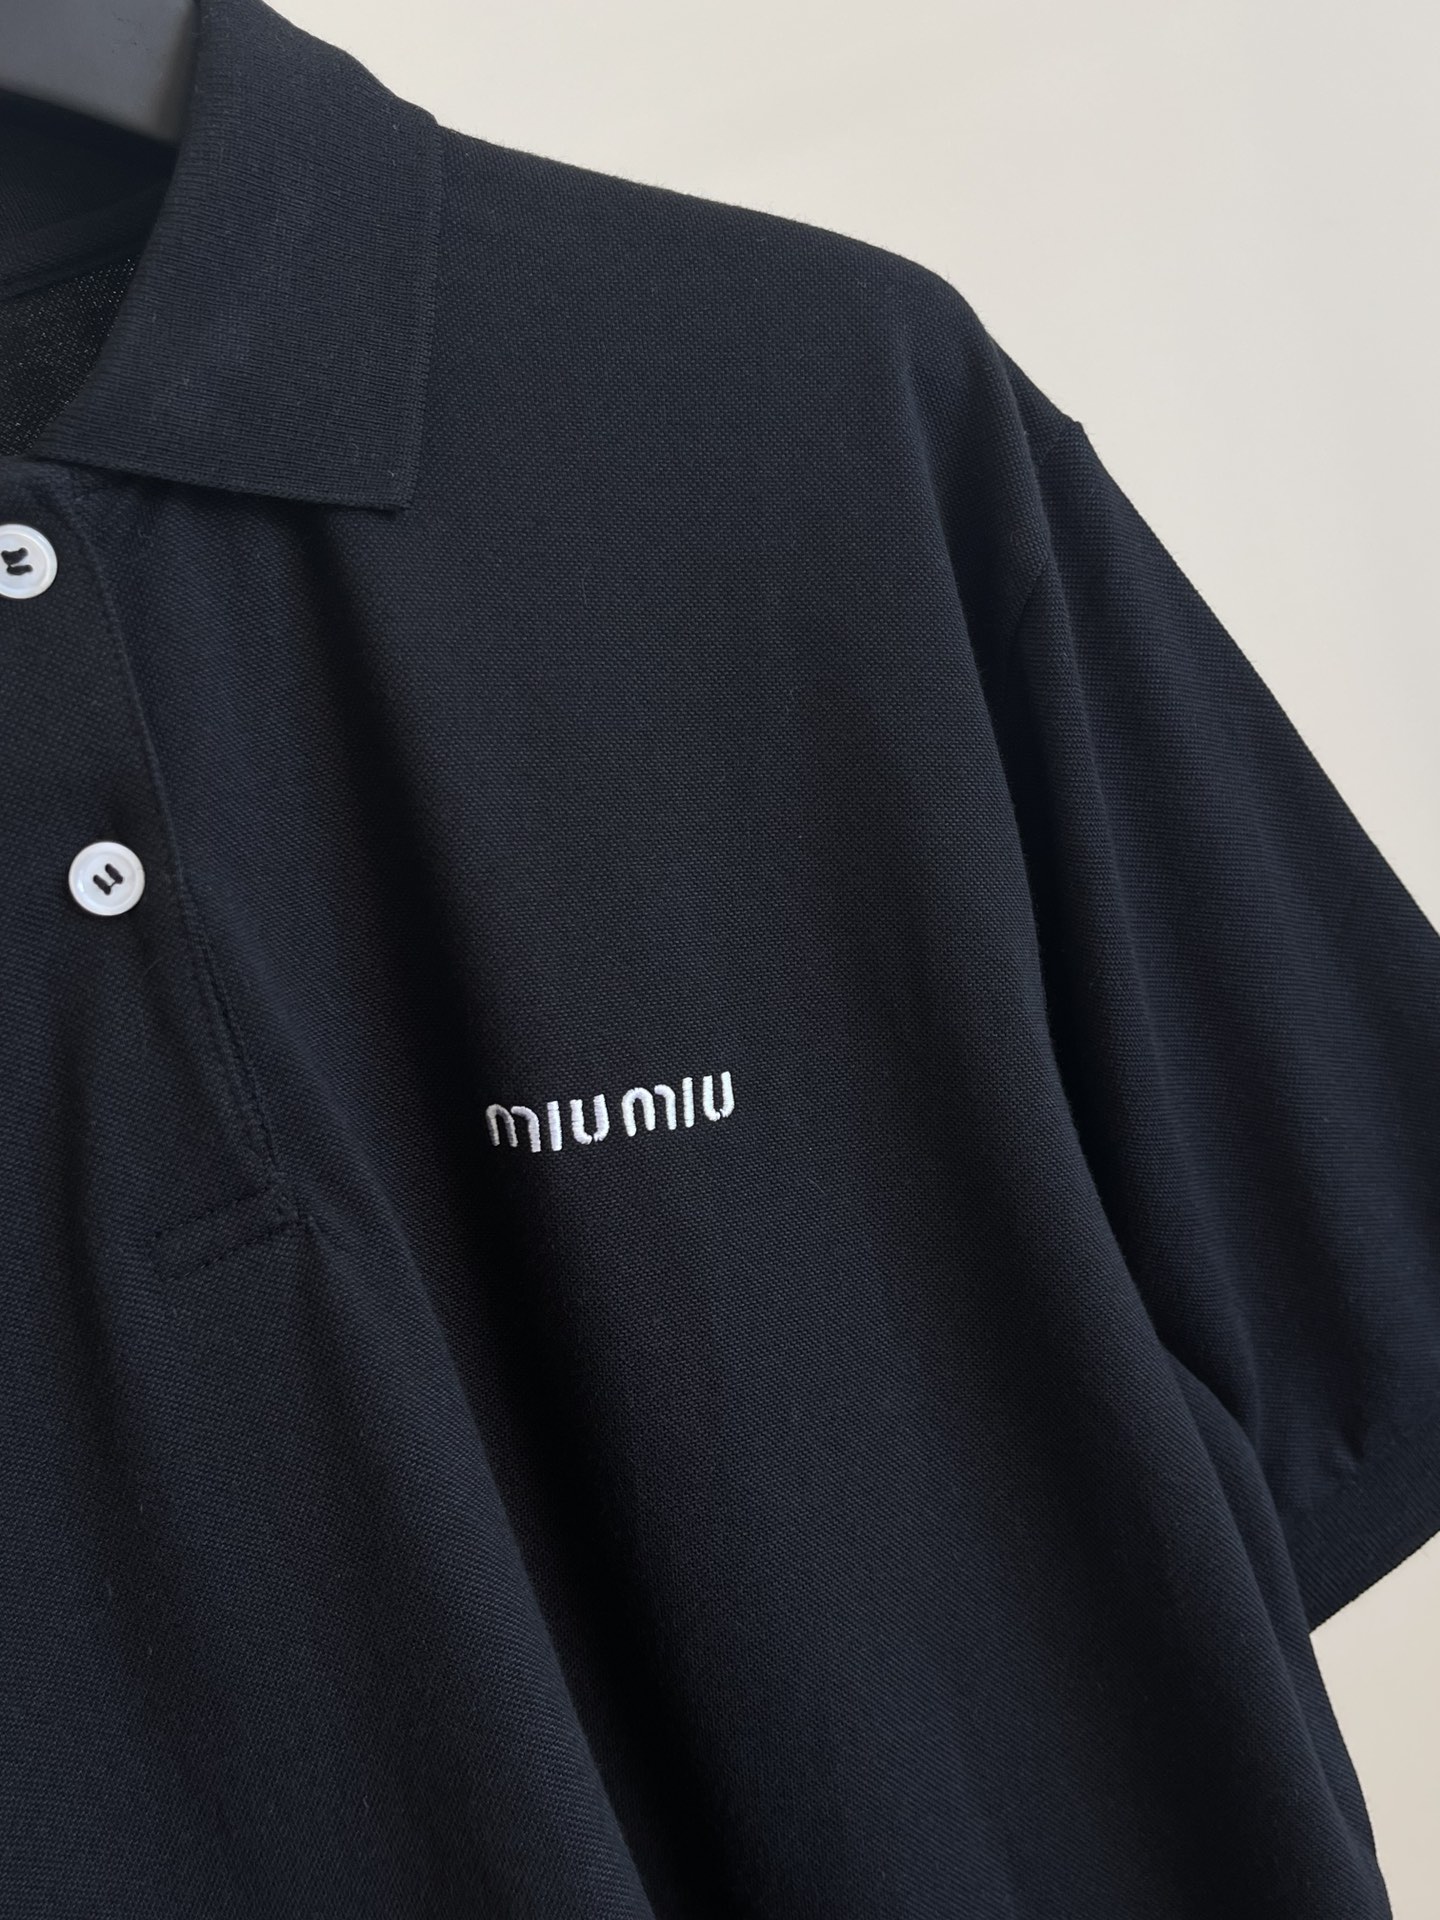 ミュウミュウに似たブランド激安通販 ポロシャツ トップス 半袖 シンプル 純綿 通気性いい ブラック_5